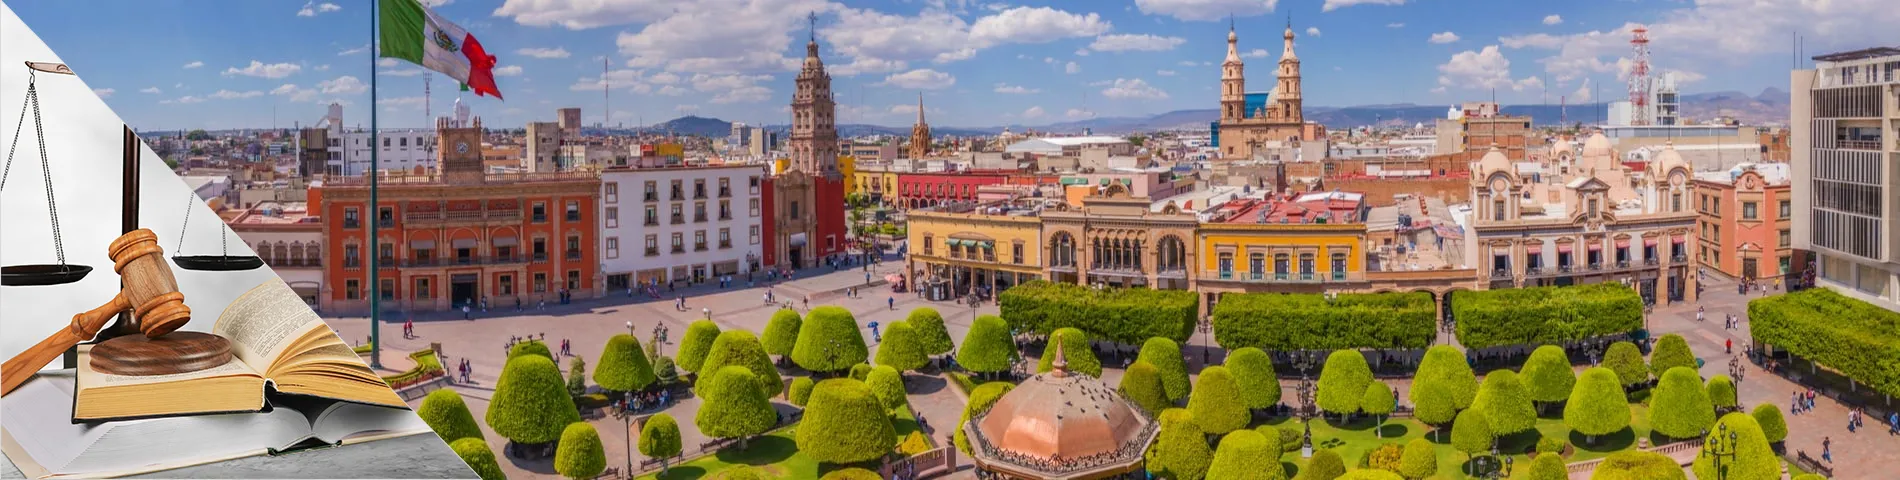 Guanajuato - Španielčina pre právnikov